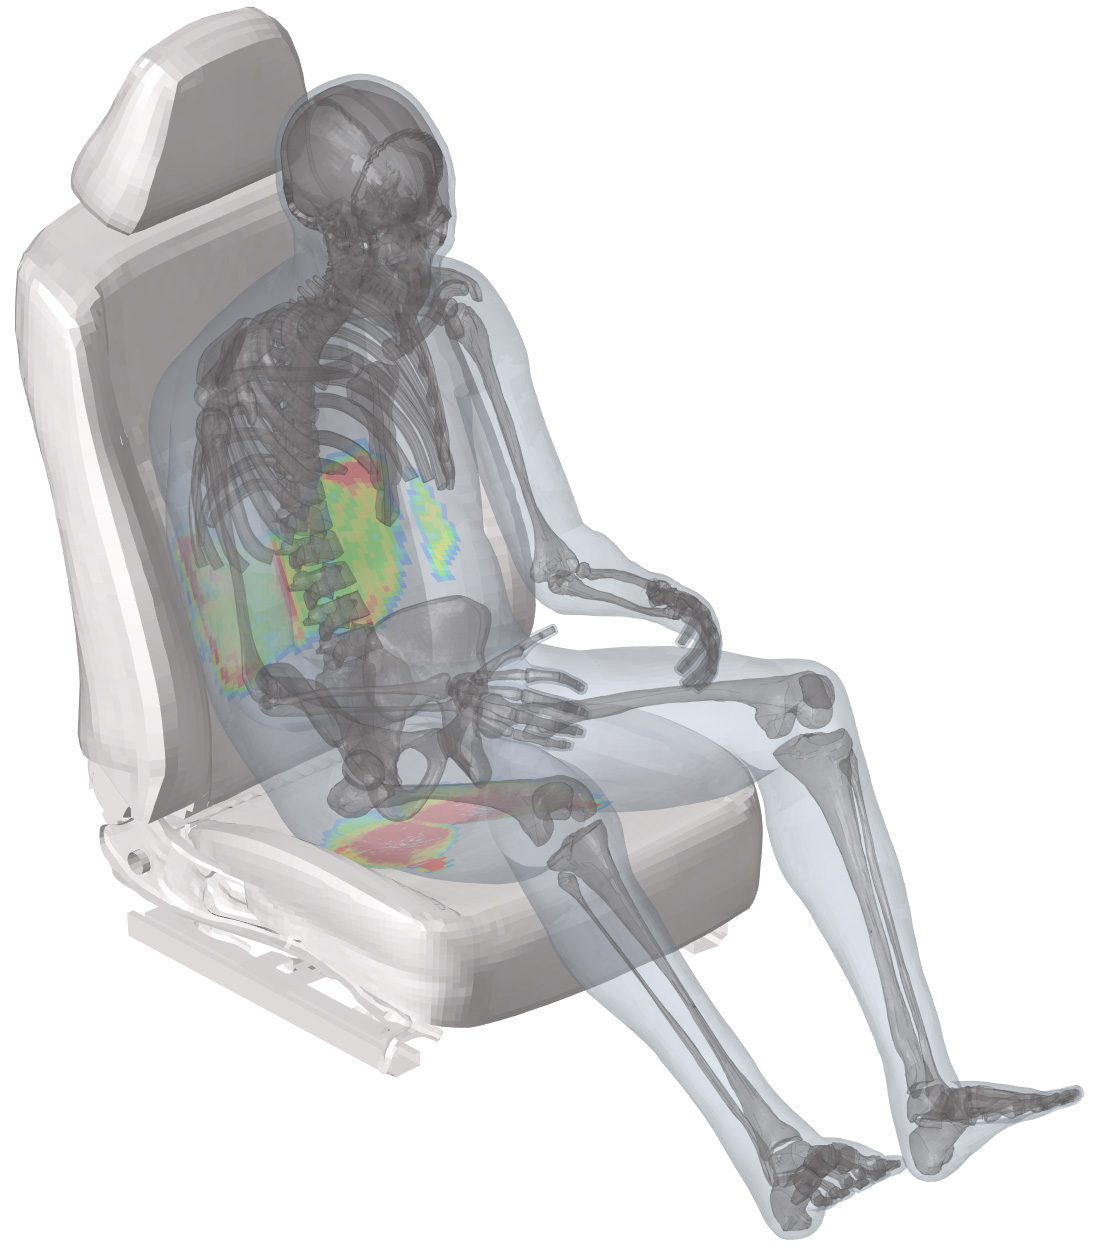 Knochenmodell EMMA auf einem Autositz